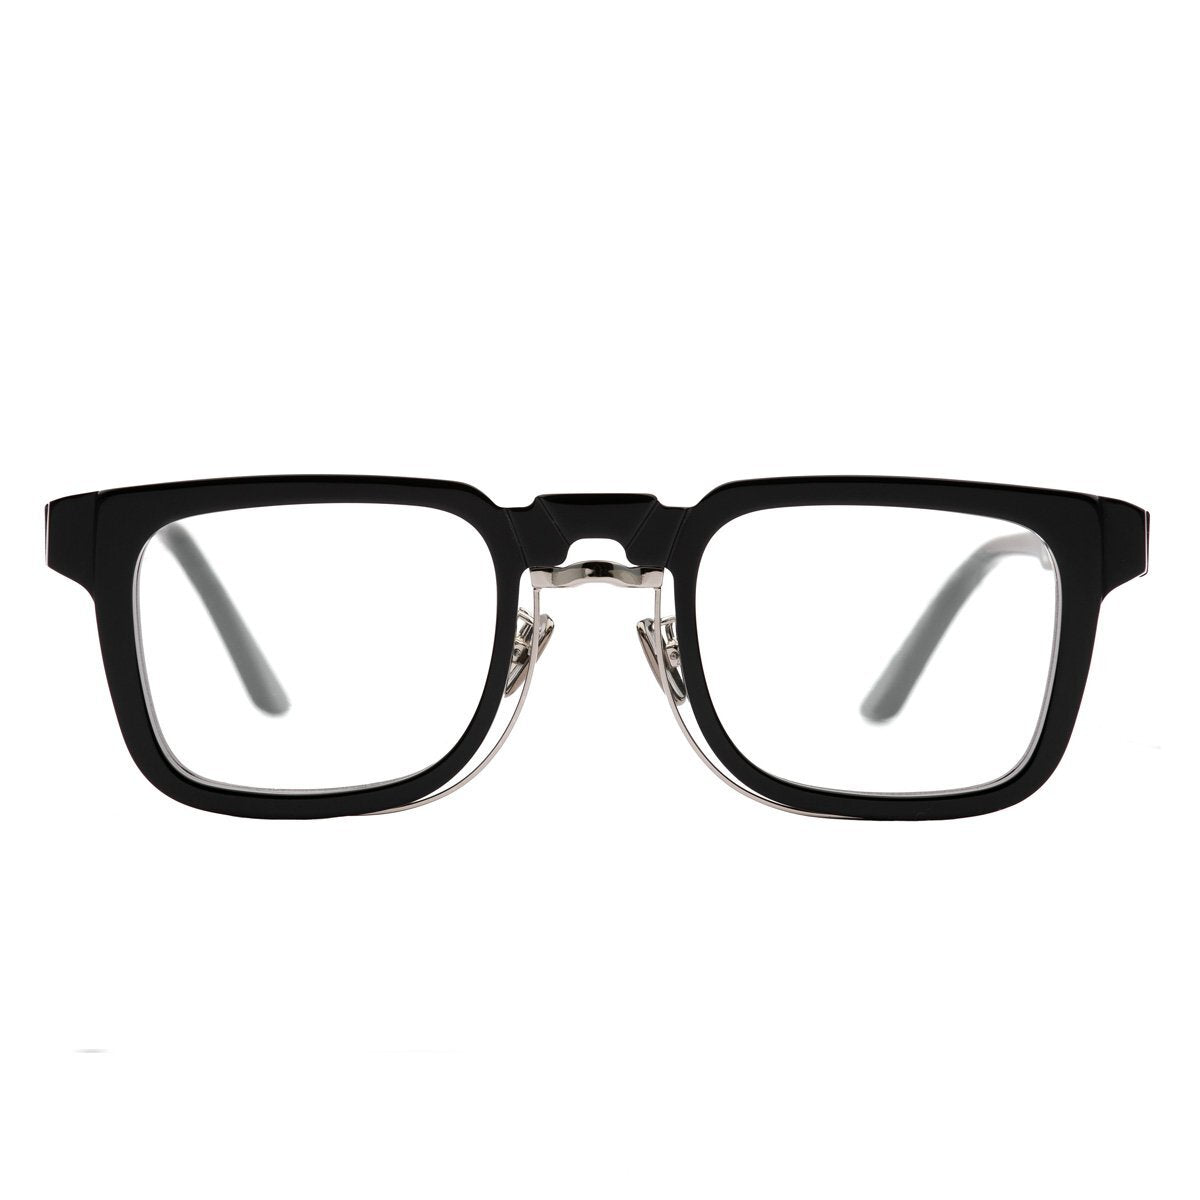 Kuboraum Maske N4 - Eyeglasses